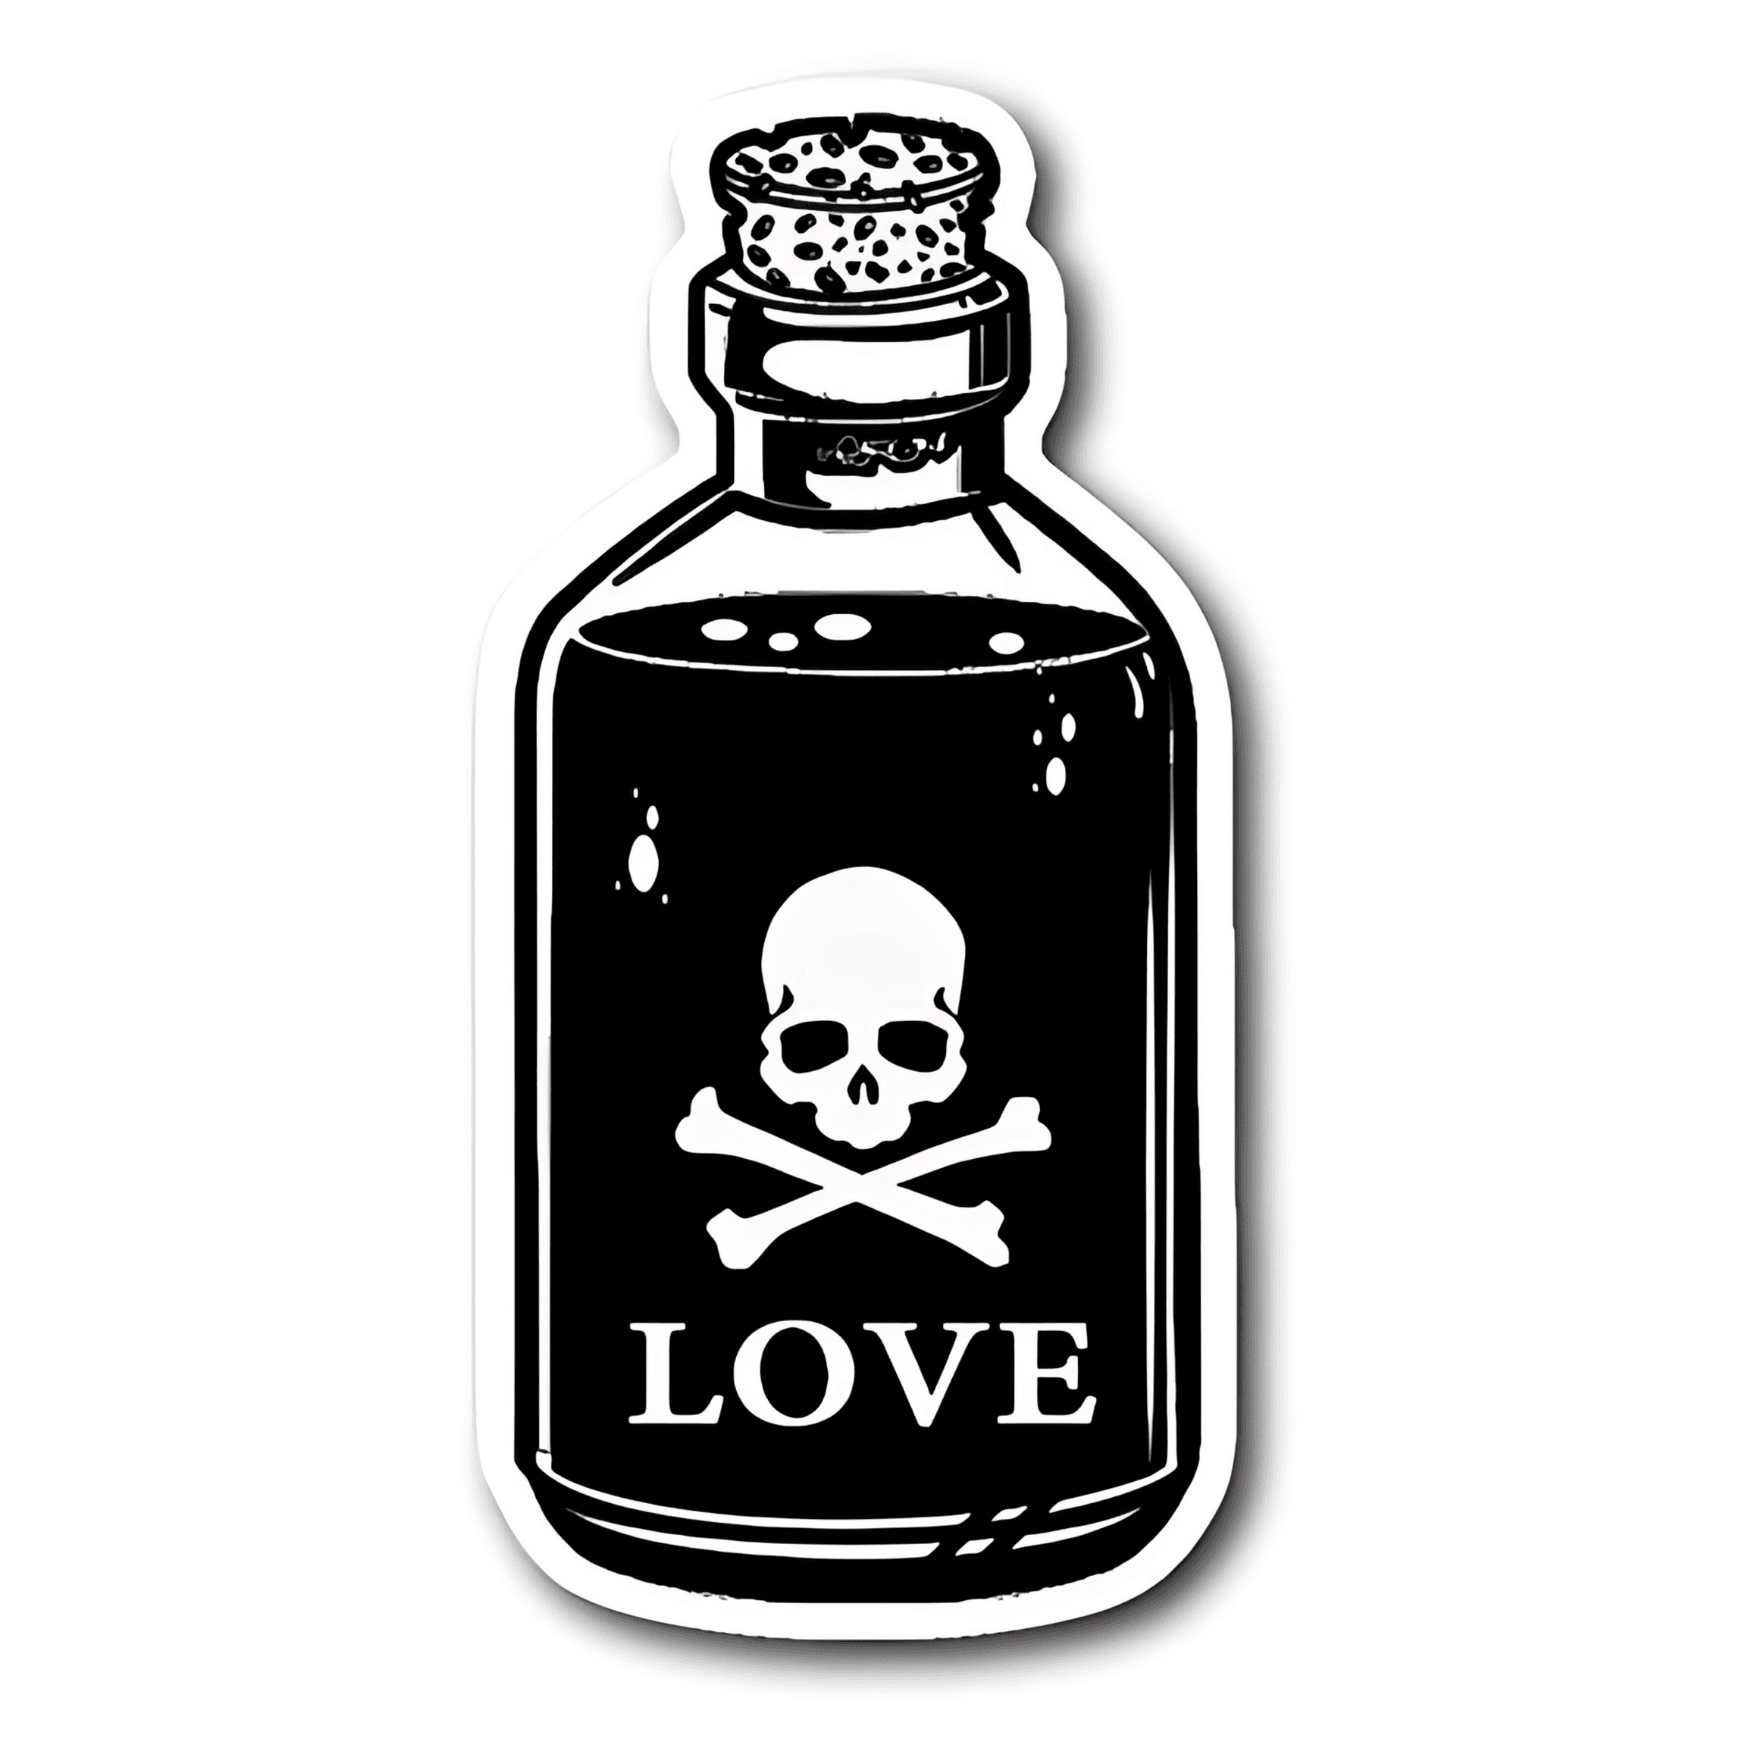 Love is Poison sticker şefaf 6cm